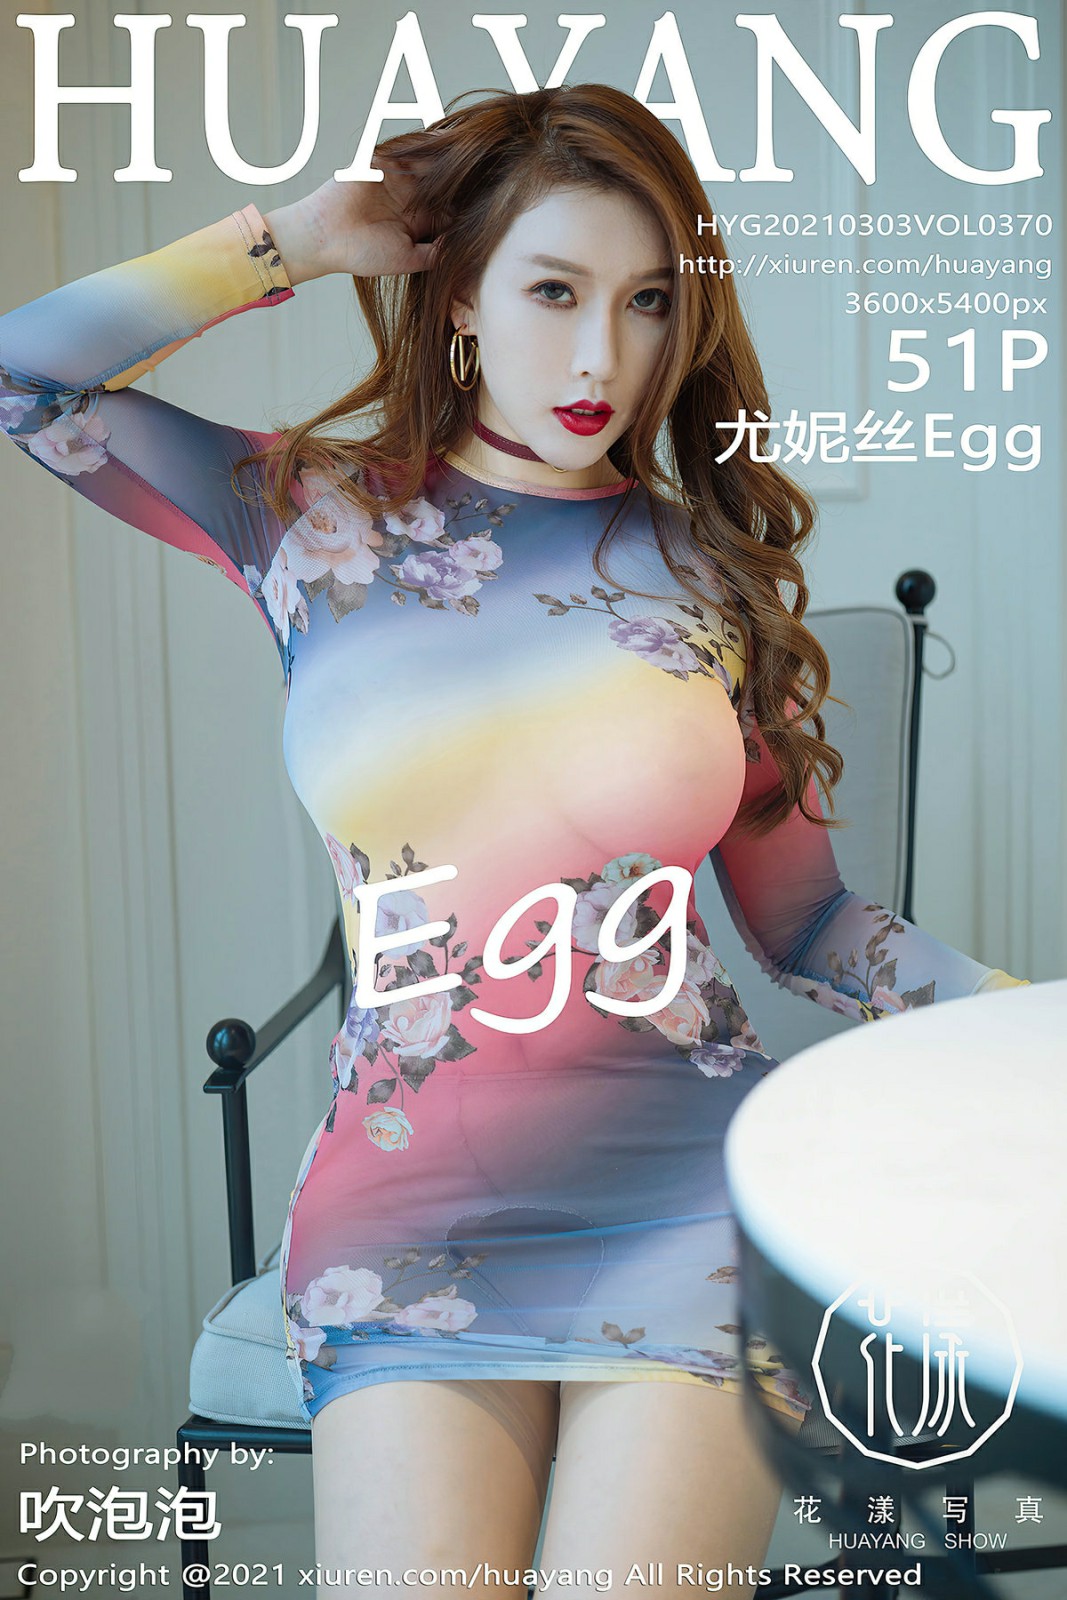 [HuaYang花漾写真] 2021.03.03 VOL.370 Egg-尤妮丝Egg [51P520MB]